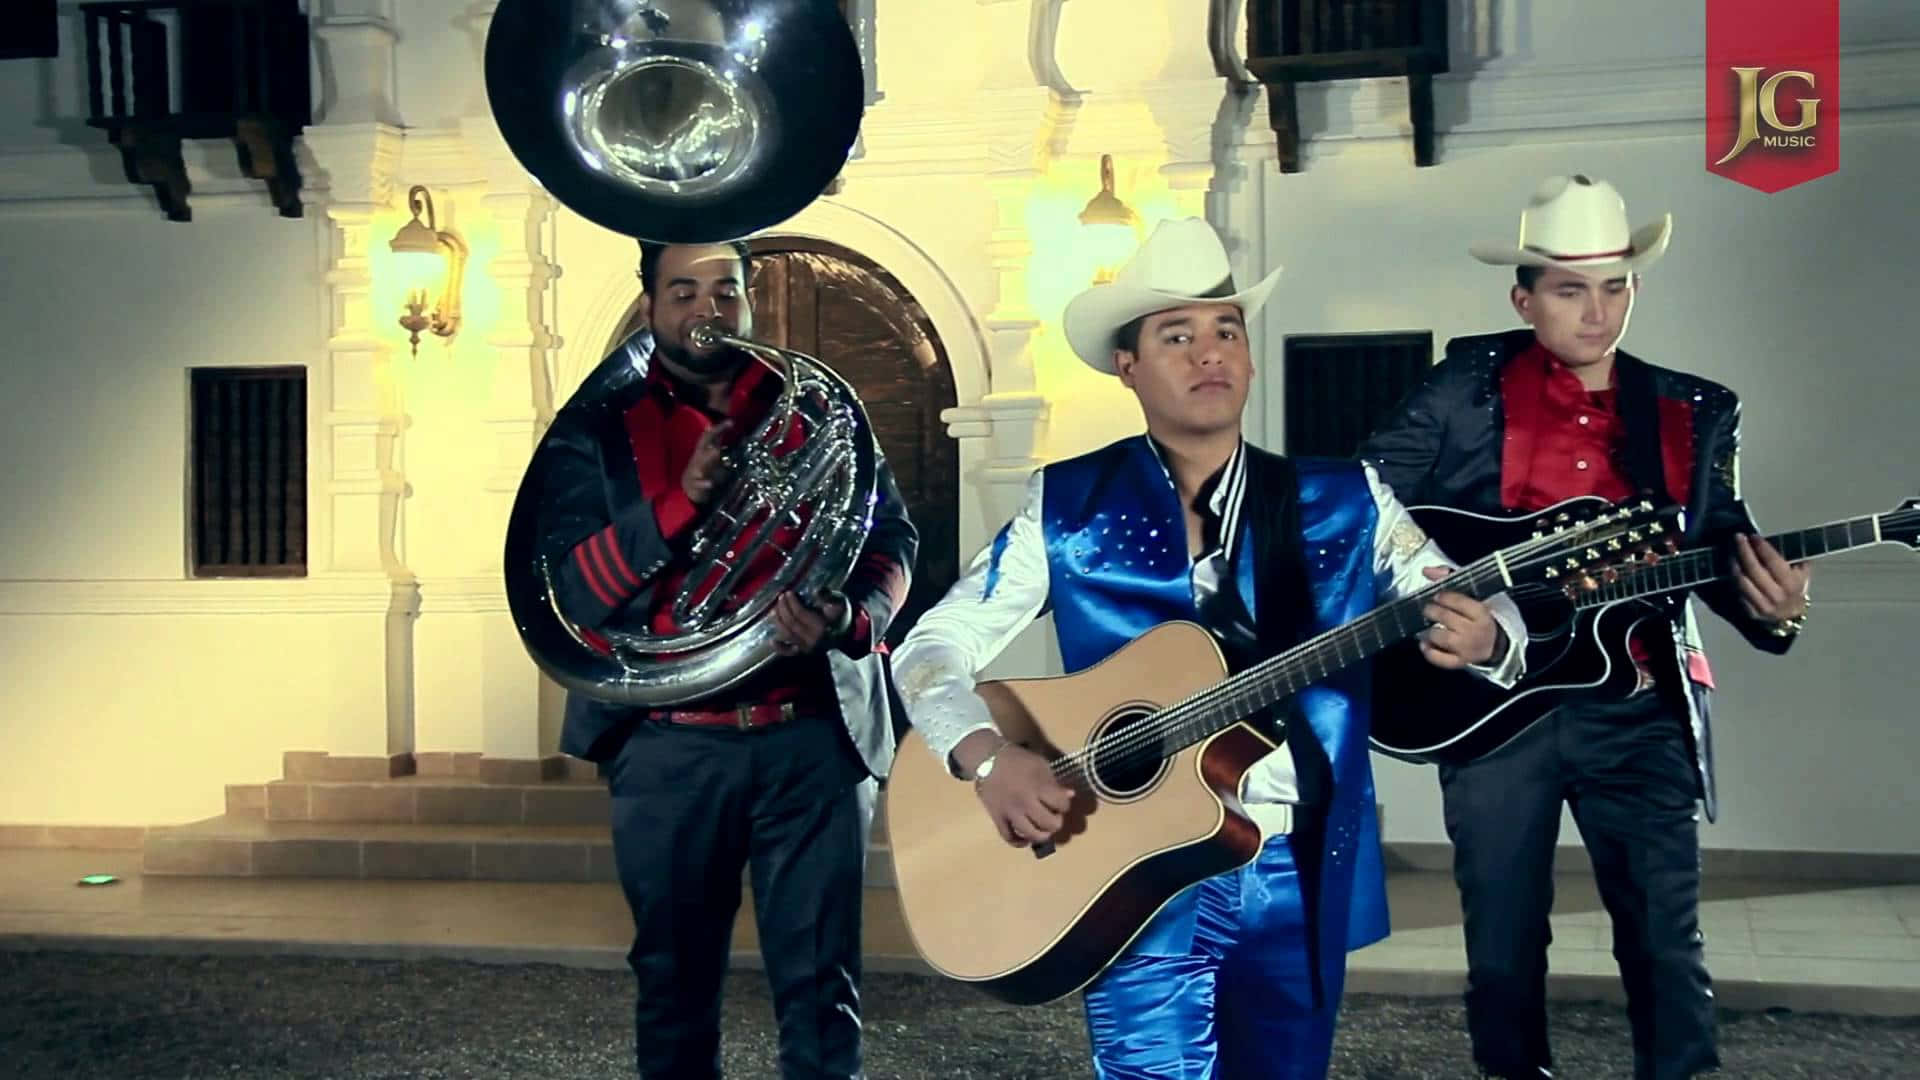 En gruppe af mænd i traditionel mexicansk påklædning, der spiller instrumenter. Wallpaper